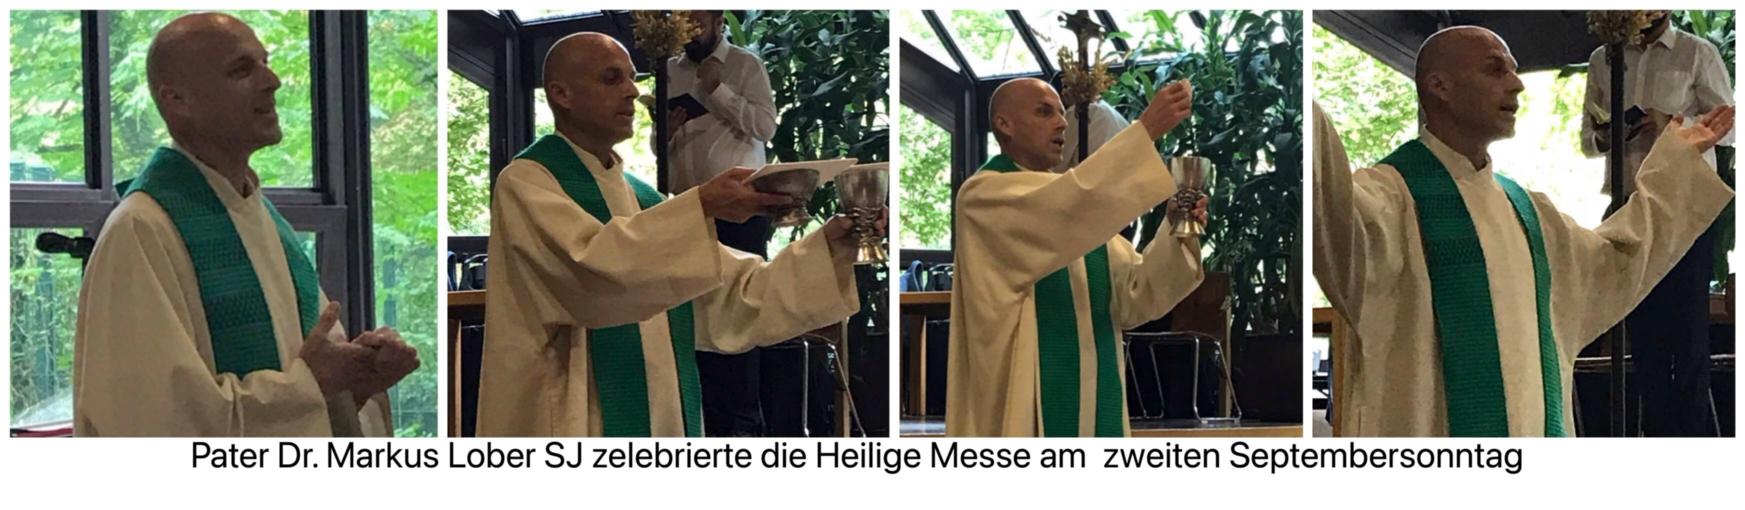 Pater Dr. Markus Lober SJ zelebriert die Heilige Messe (c) Brigitta Gebauer 2021